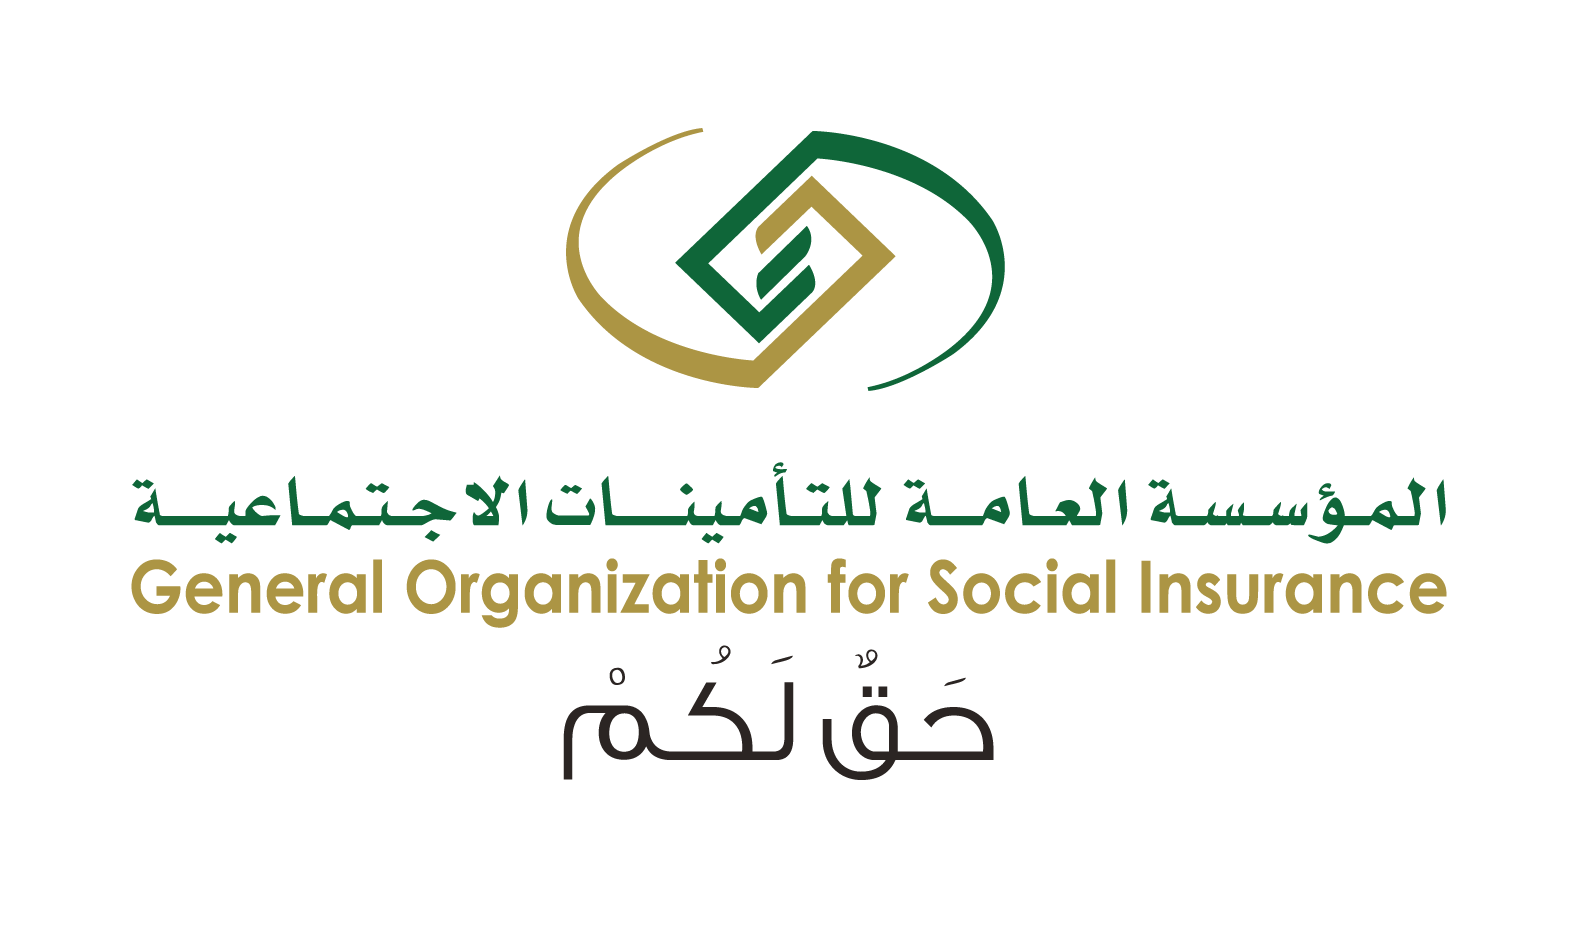 خطوات تعديل الأيبان لعملاء أنظمة التقاعد التأمينات الاجتماعية في السعودية 1443